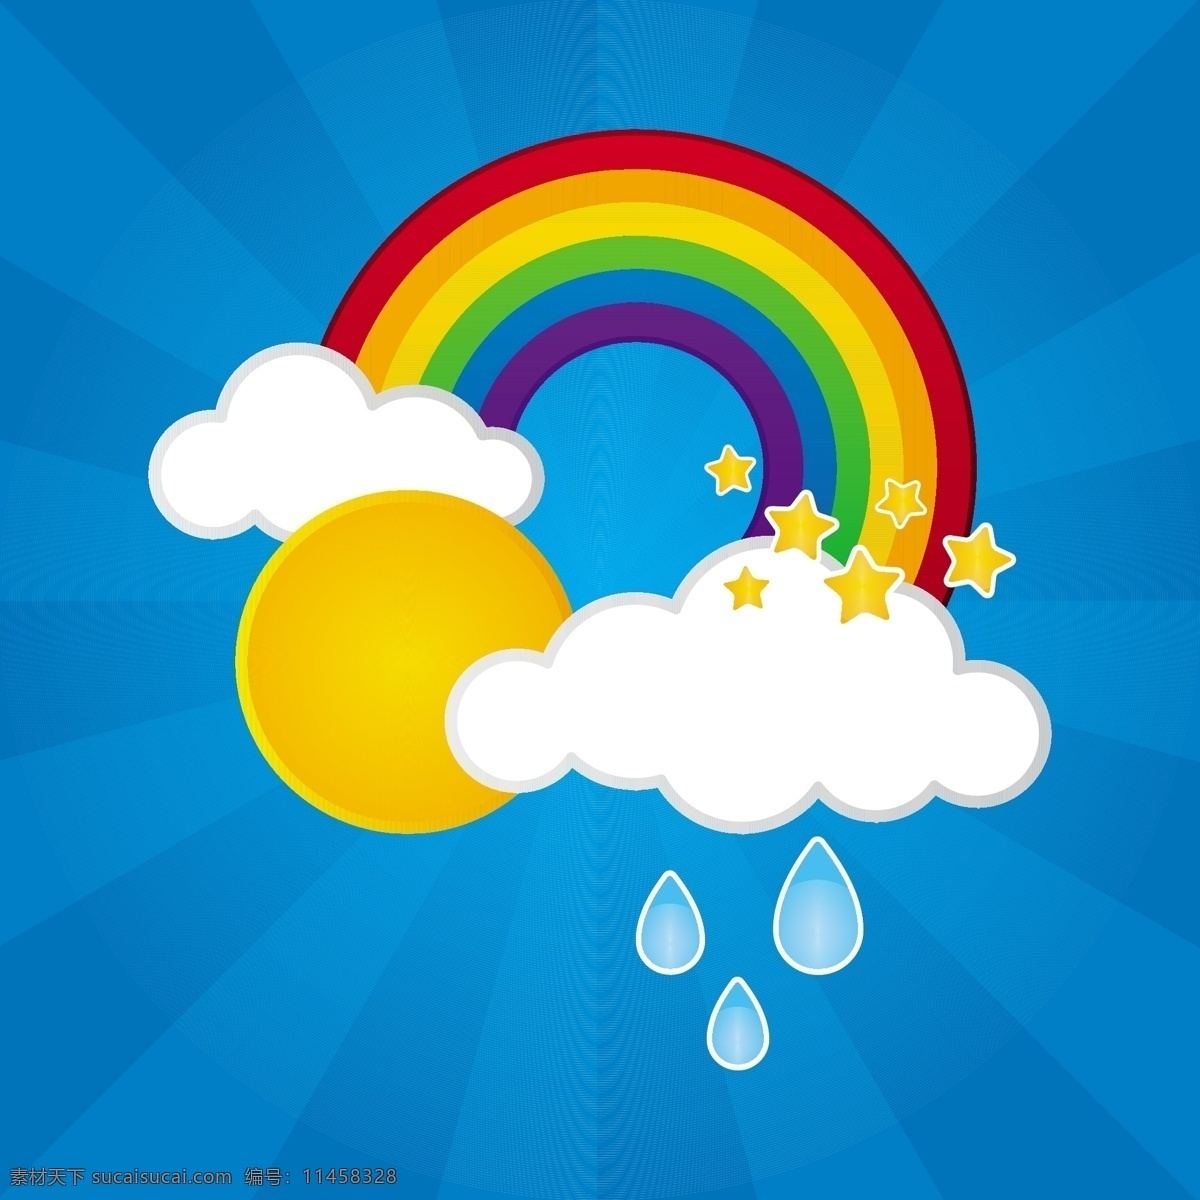 卡通 彩虹 太阳 云朵 星星 矢量图 图标 云 天气图标 生活百科 矢量素材 蓝色